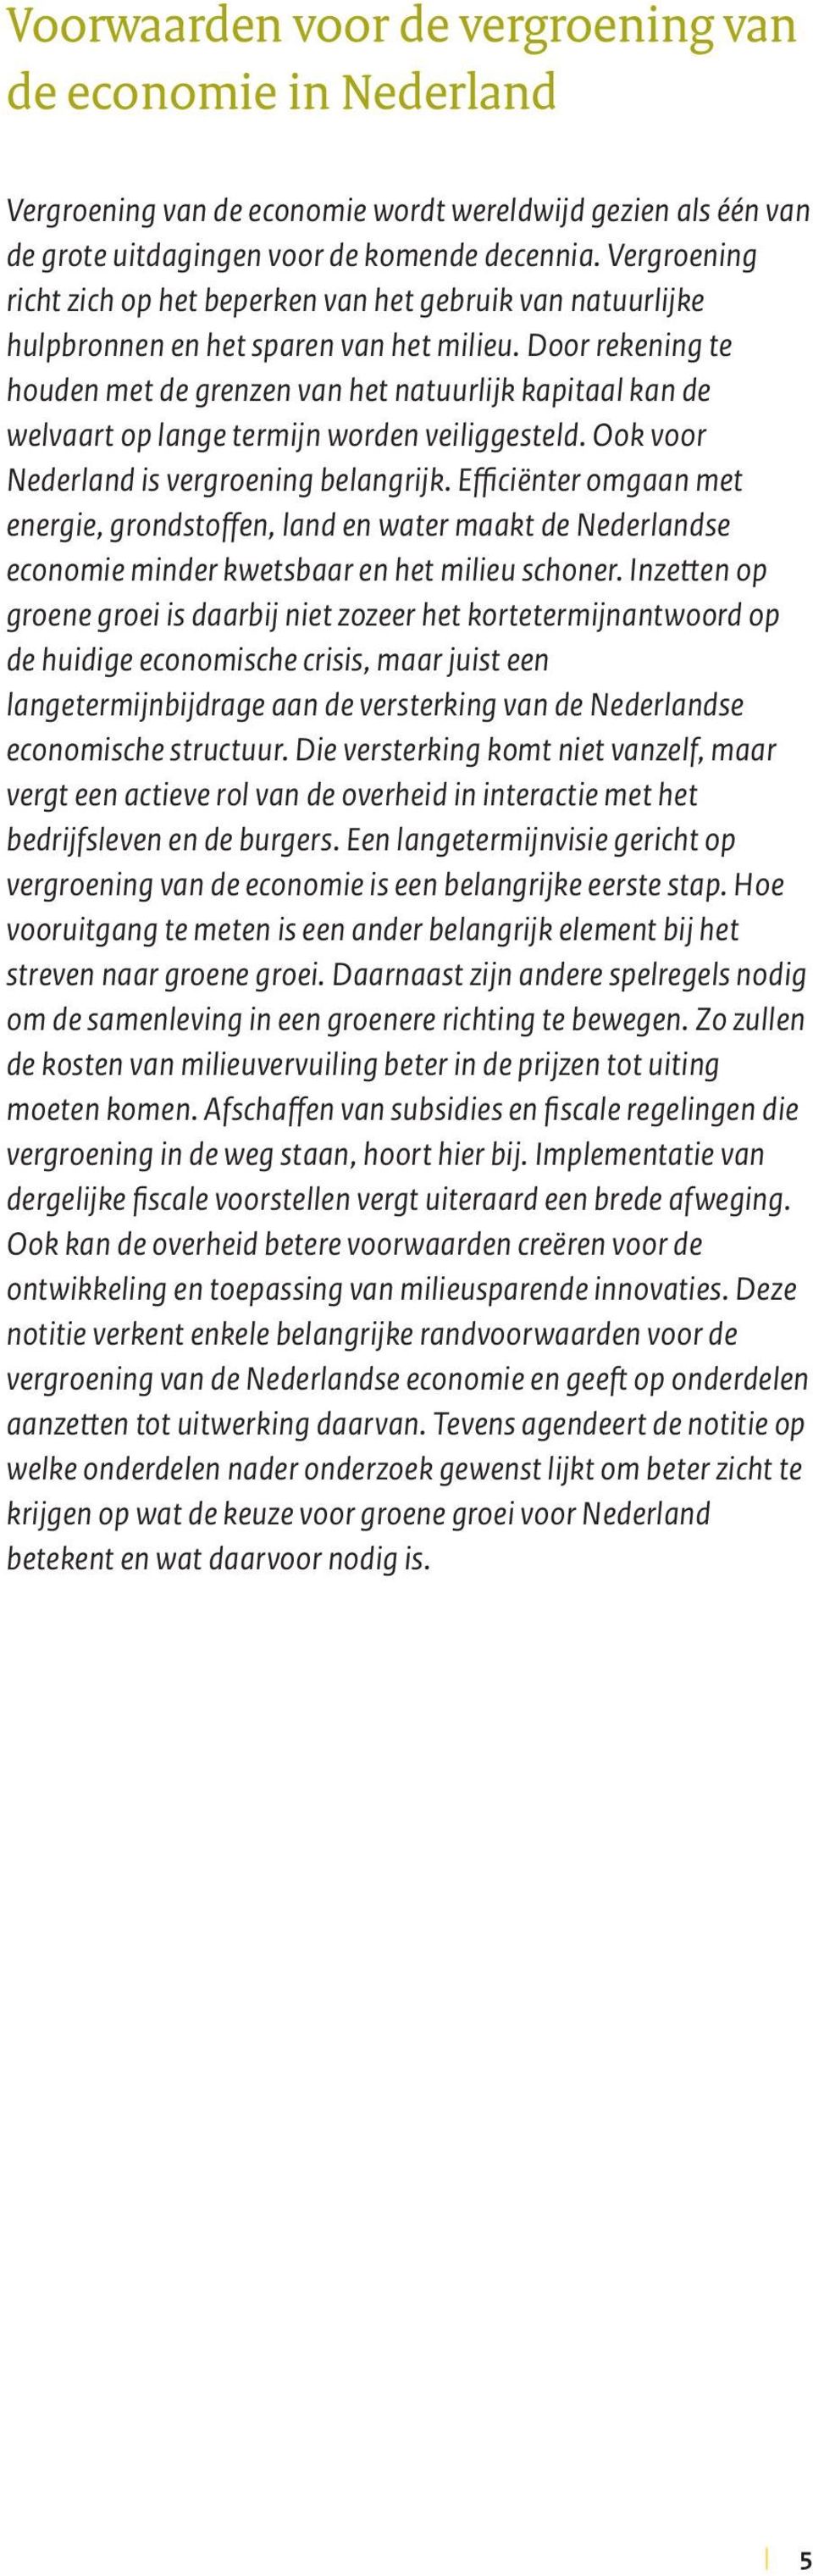 Door rekening te houden met de grenzen van het natuurlijk kapitaal kan de welvaart op lange termijn worden veiliggesteld. Ook voor Nederland is vergroening belangrijk.